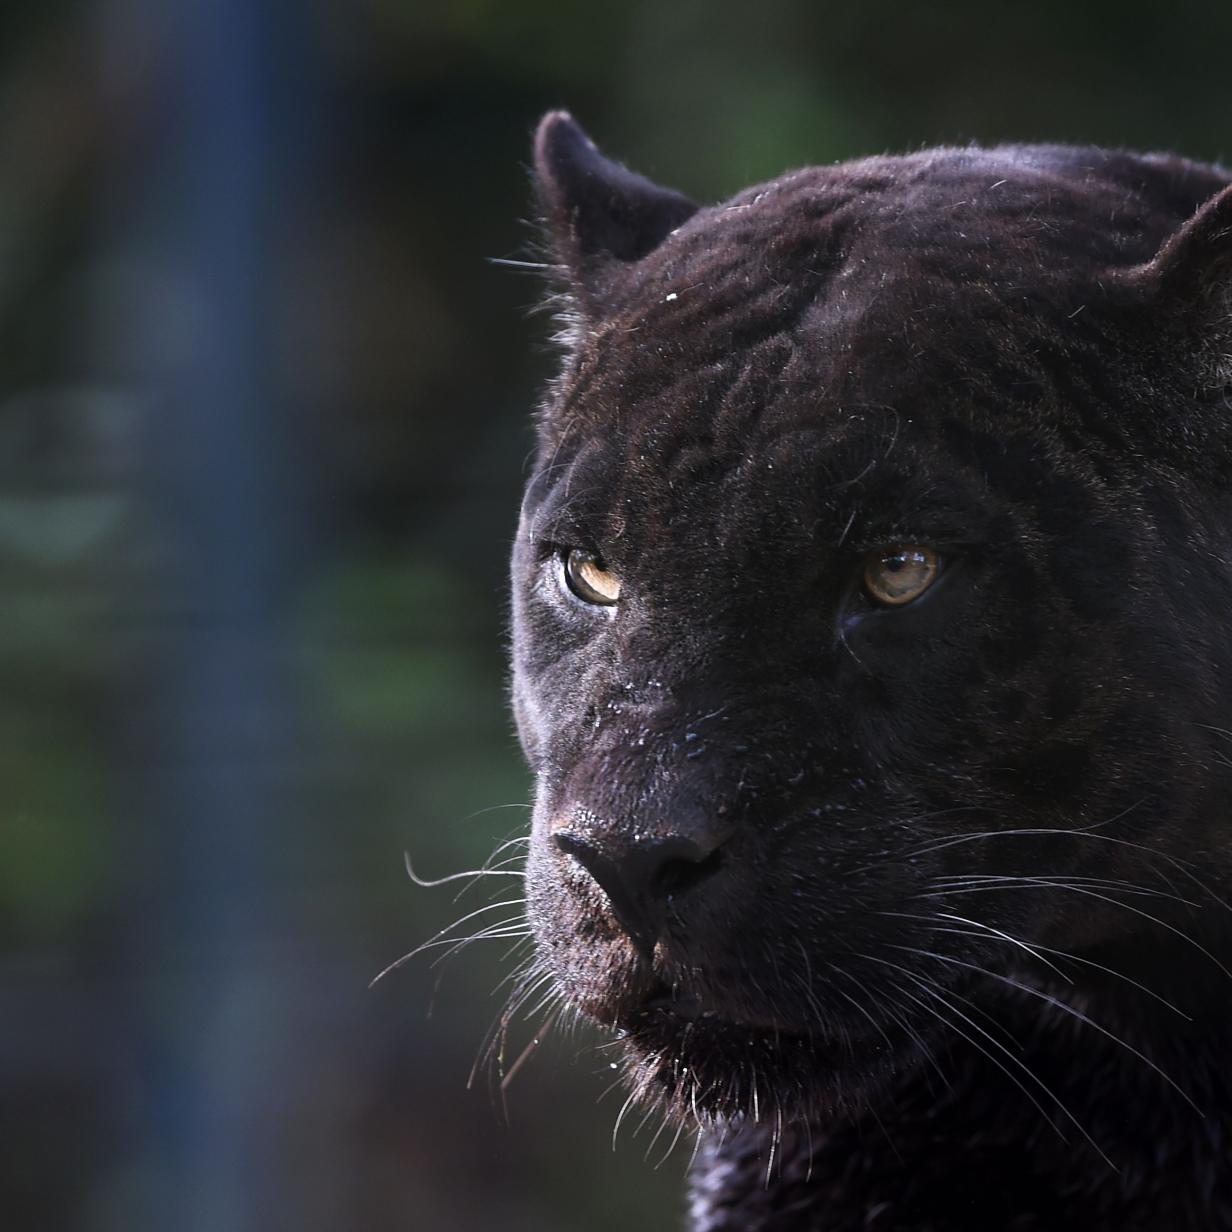 Dorfbewohner in Angst: Angeblich Panther in Südspanien gesichtet